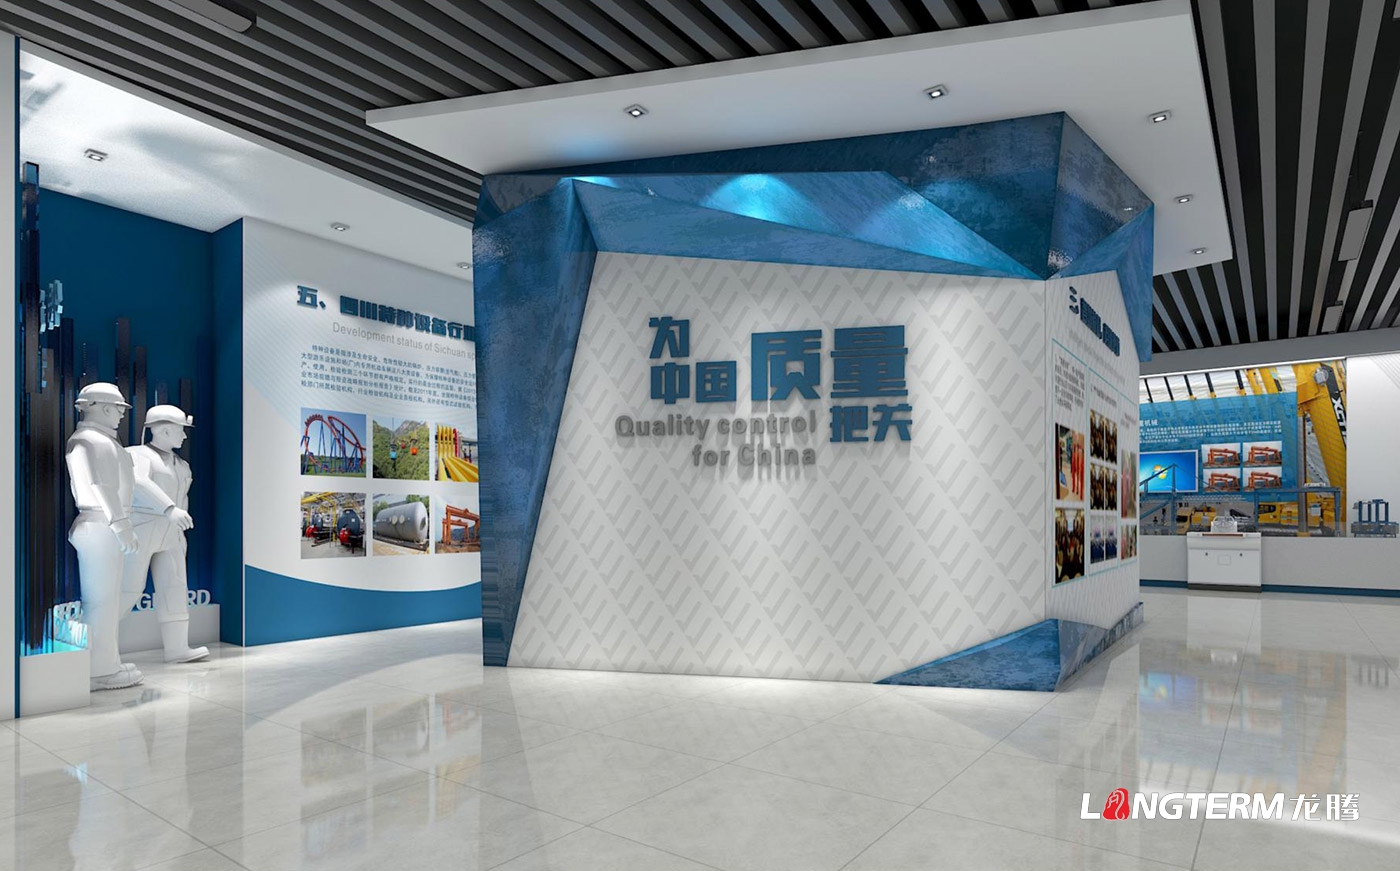 四川省特种设备检验研究院科技成果展览室、特种设备科普展示厅、临展区策划及文化墙建设设计